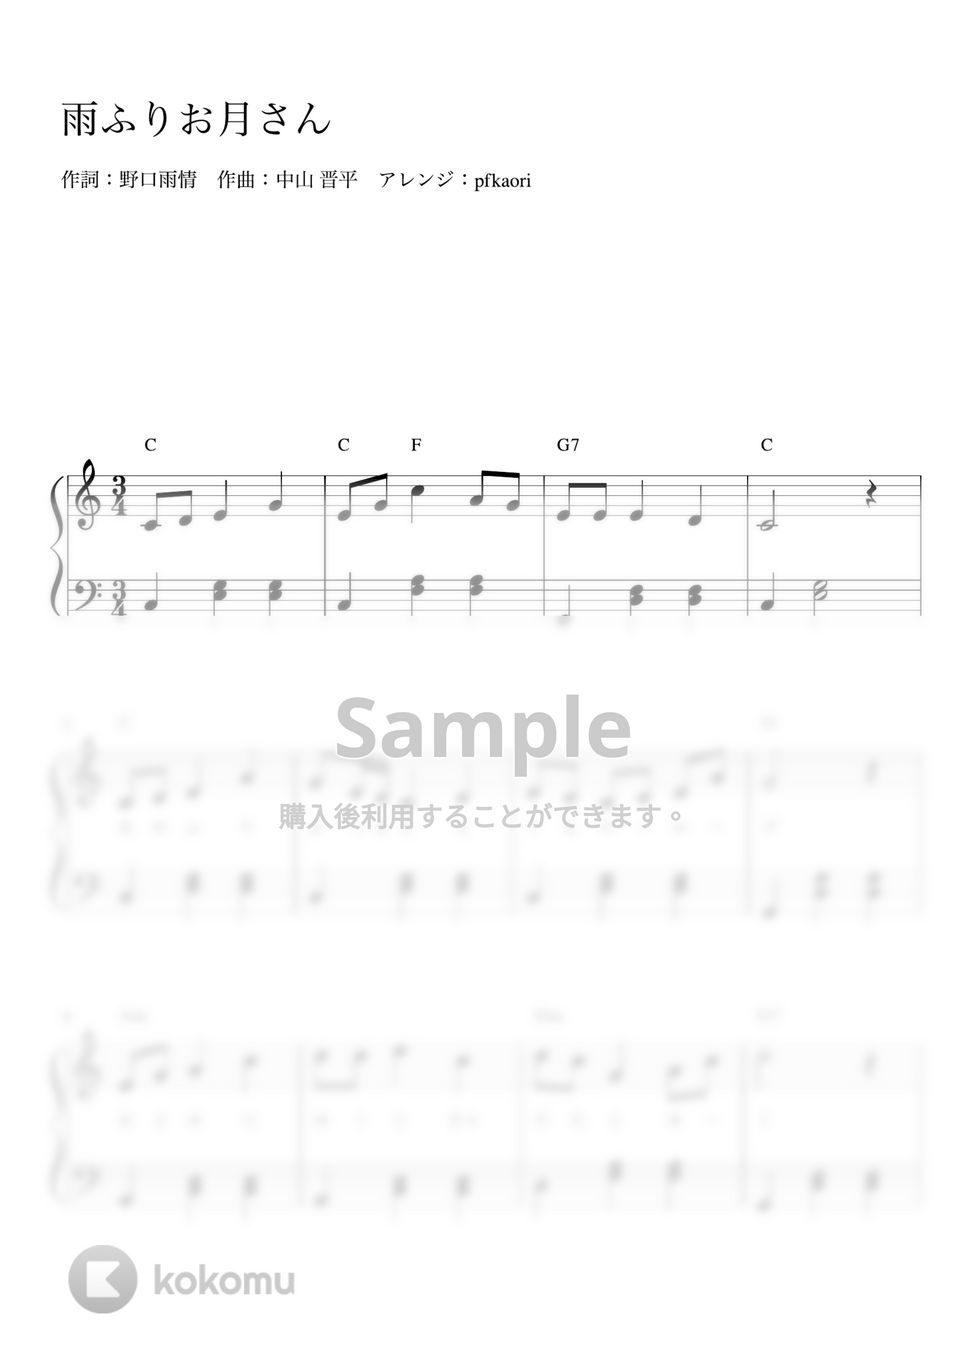 雨ふりお月さん (Cdur・ピアノソロ初級) by pfkaori